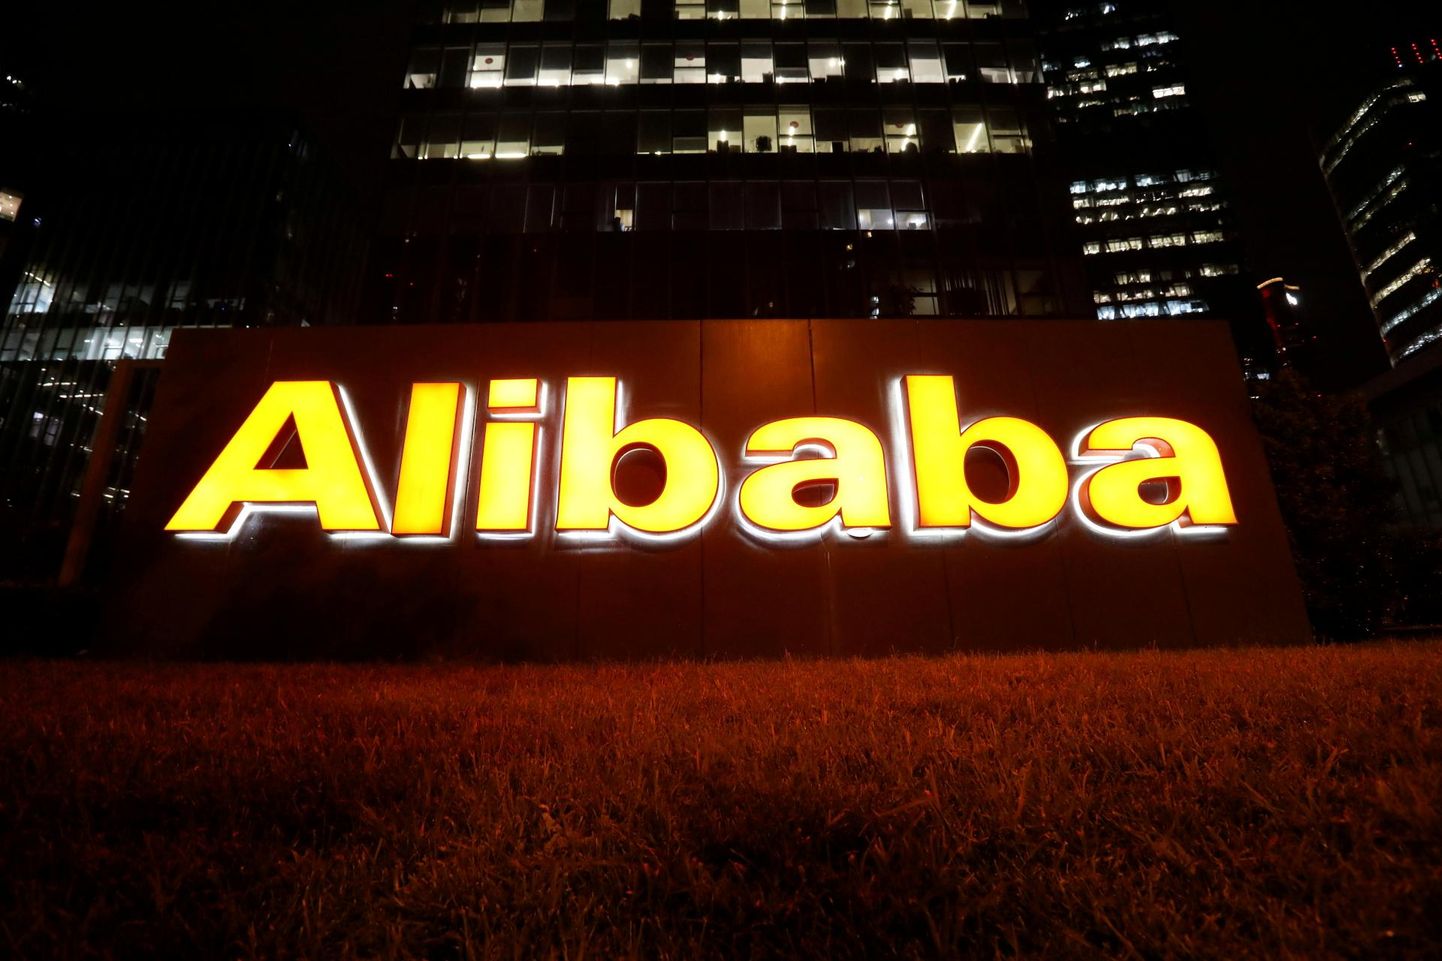 Hiina valitsus tegi Alibabale aprillis 2,45 miljardi eurose trahvi.